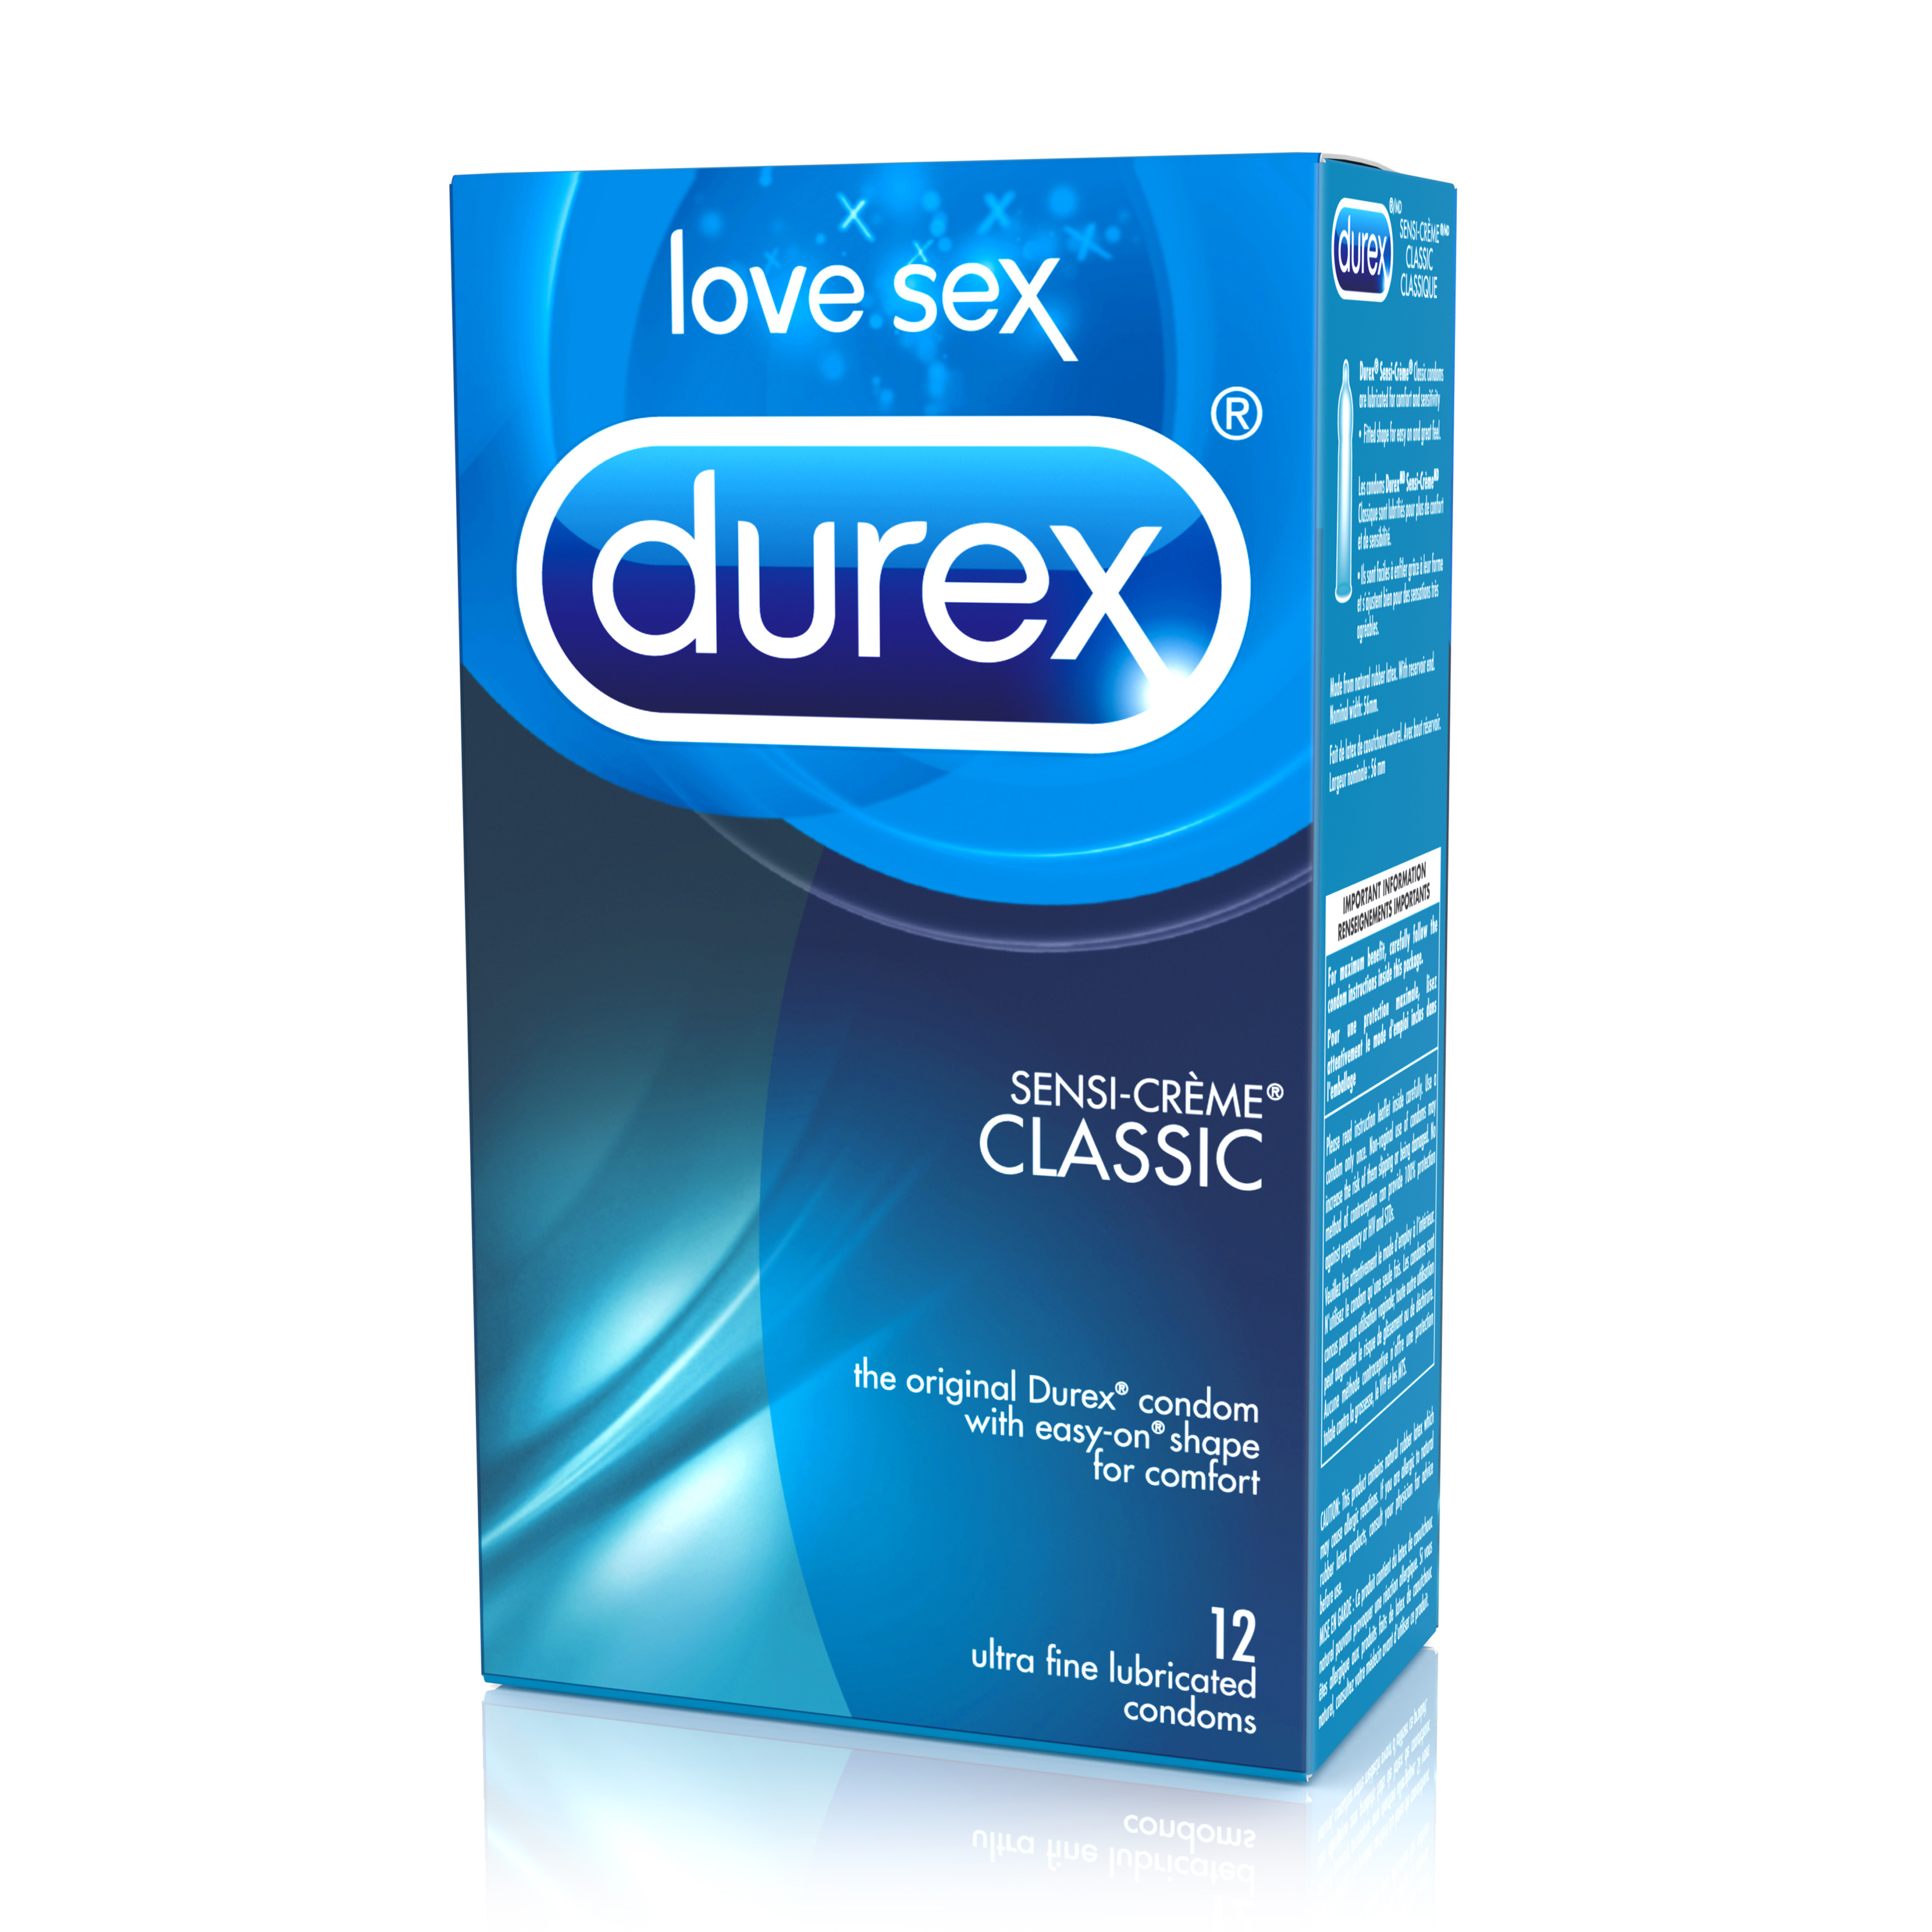 DUREX® Sensi-Crème® Lubricated Condoms (Canada)